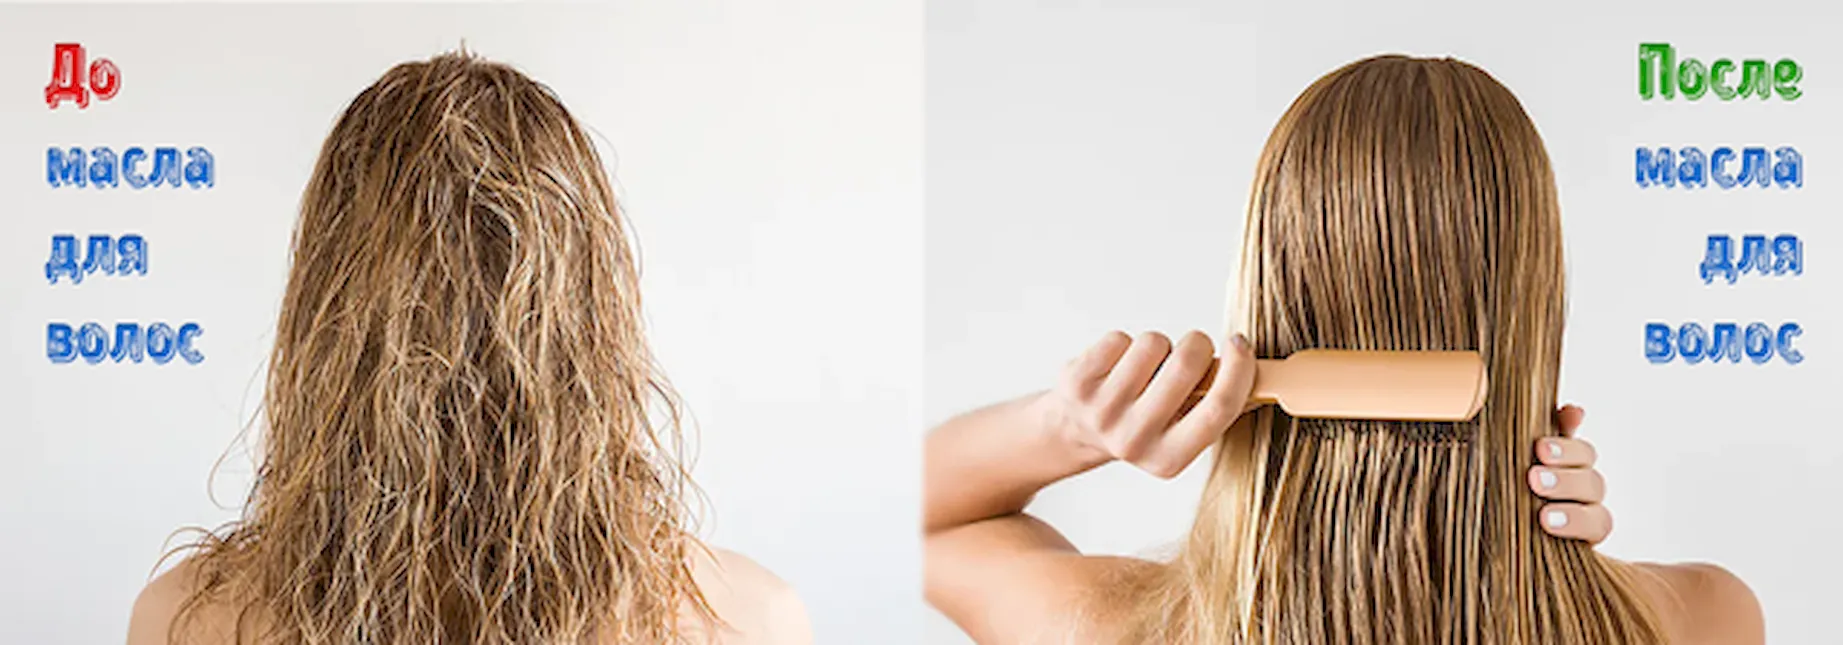 Состояние волос на голове до и после использования масла